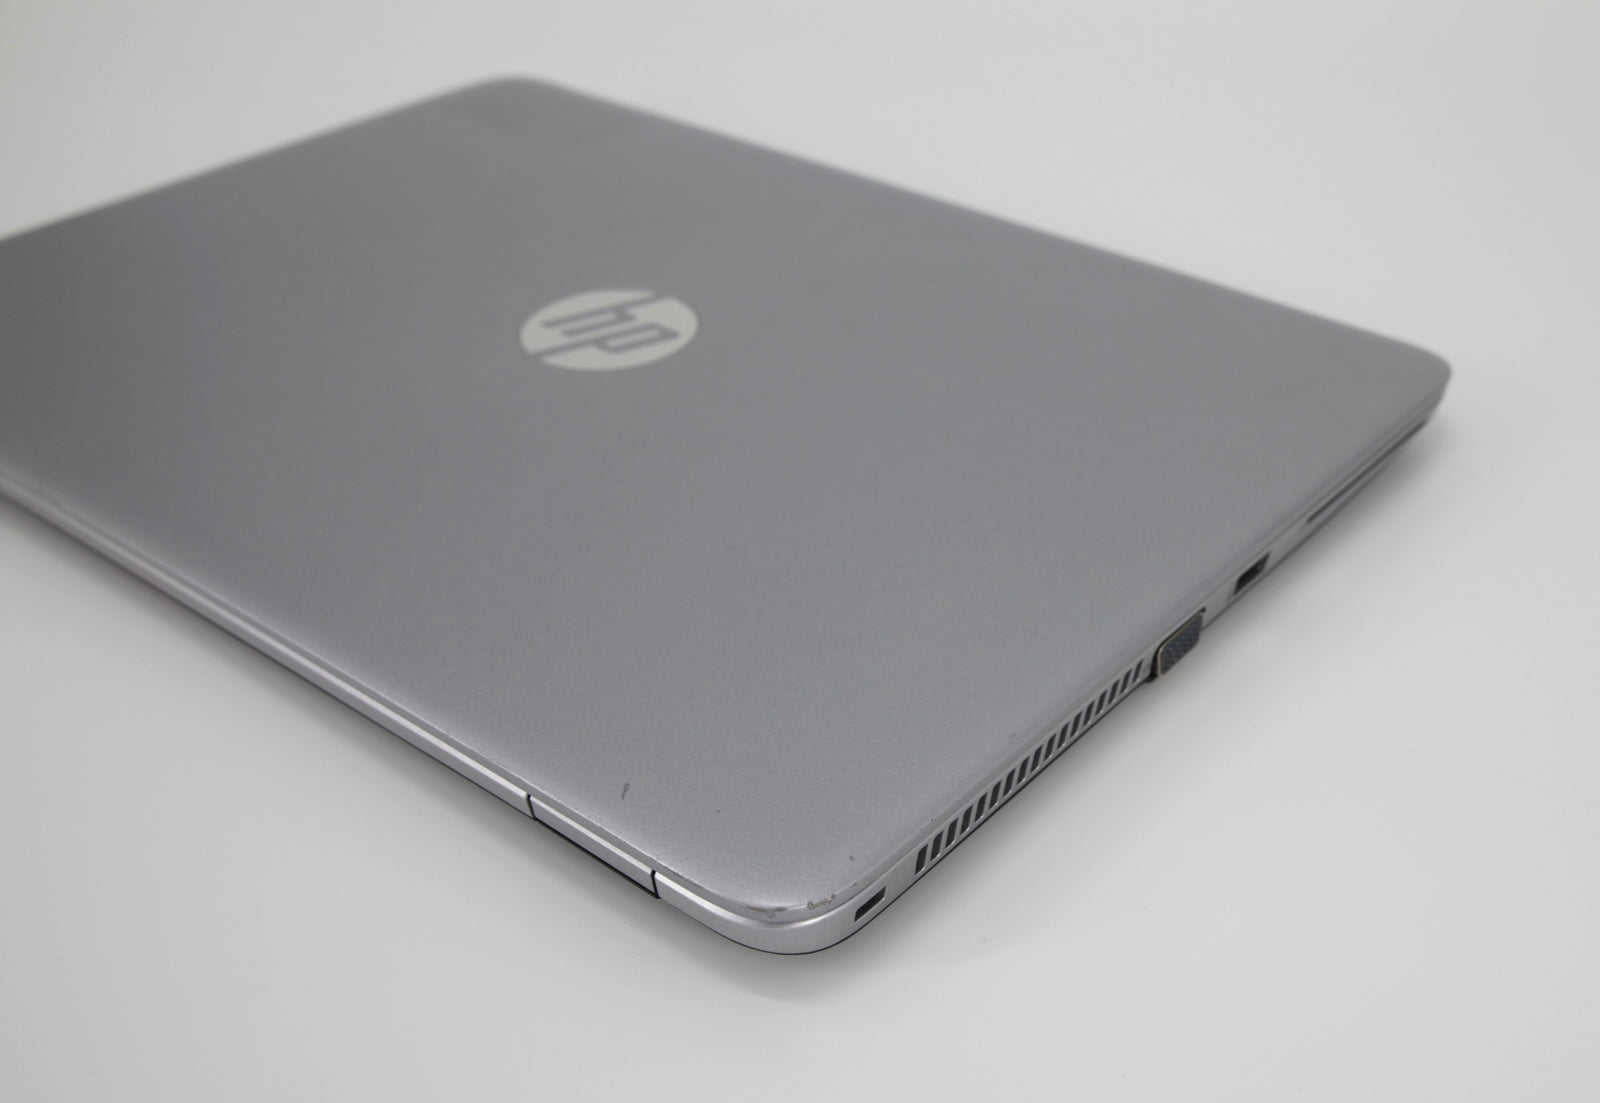 Laptop HP EliteBook 840 G4: 7th Gen Core i5 16GB RAM 256GB SSD Warranty, VAT